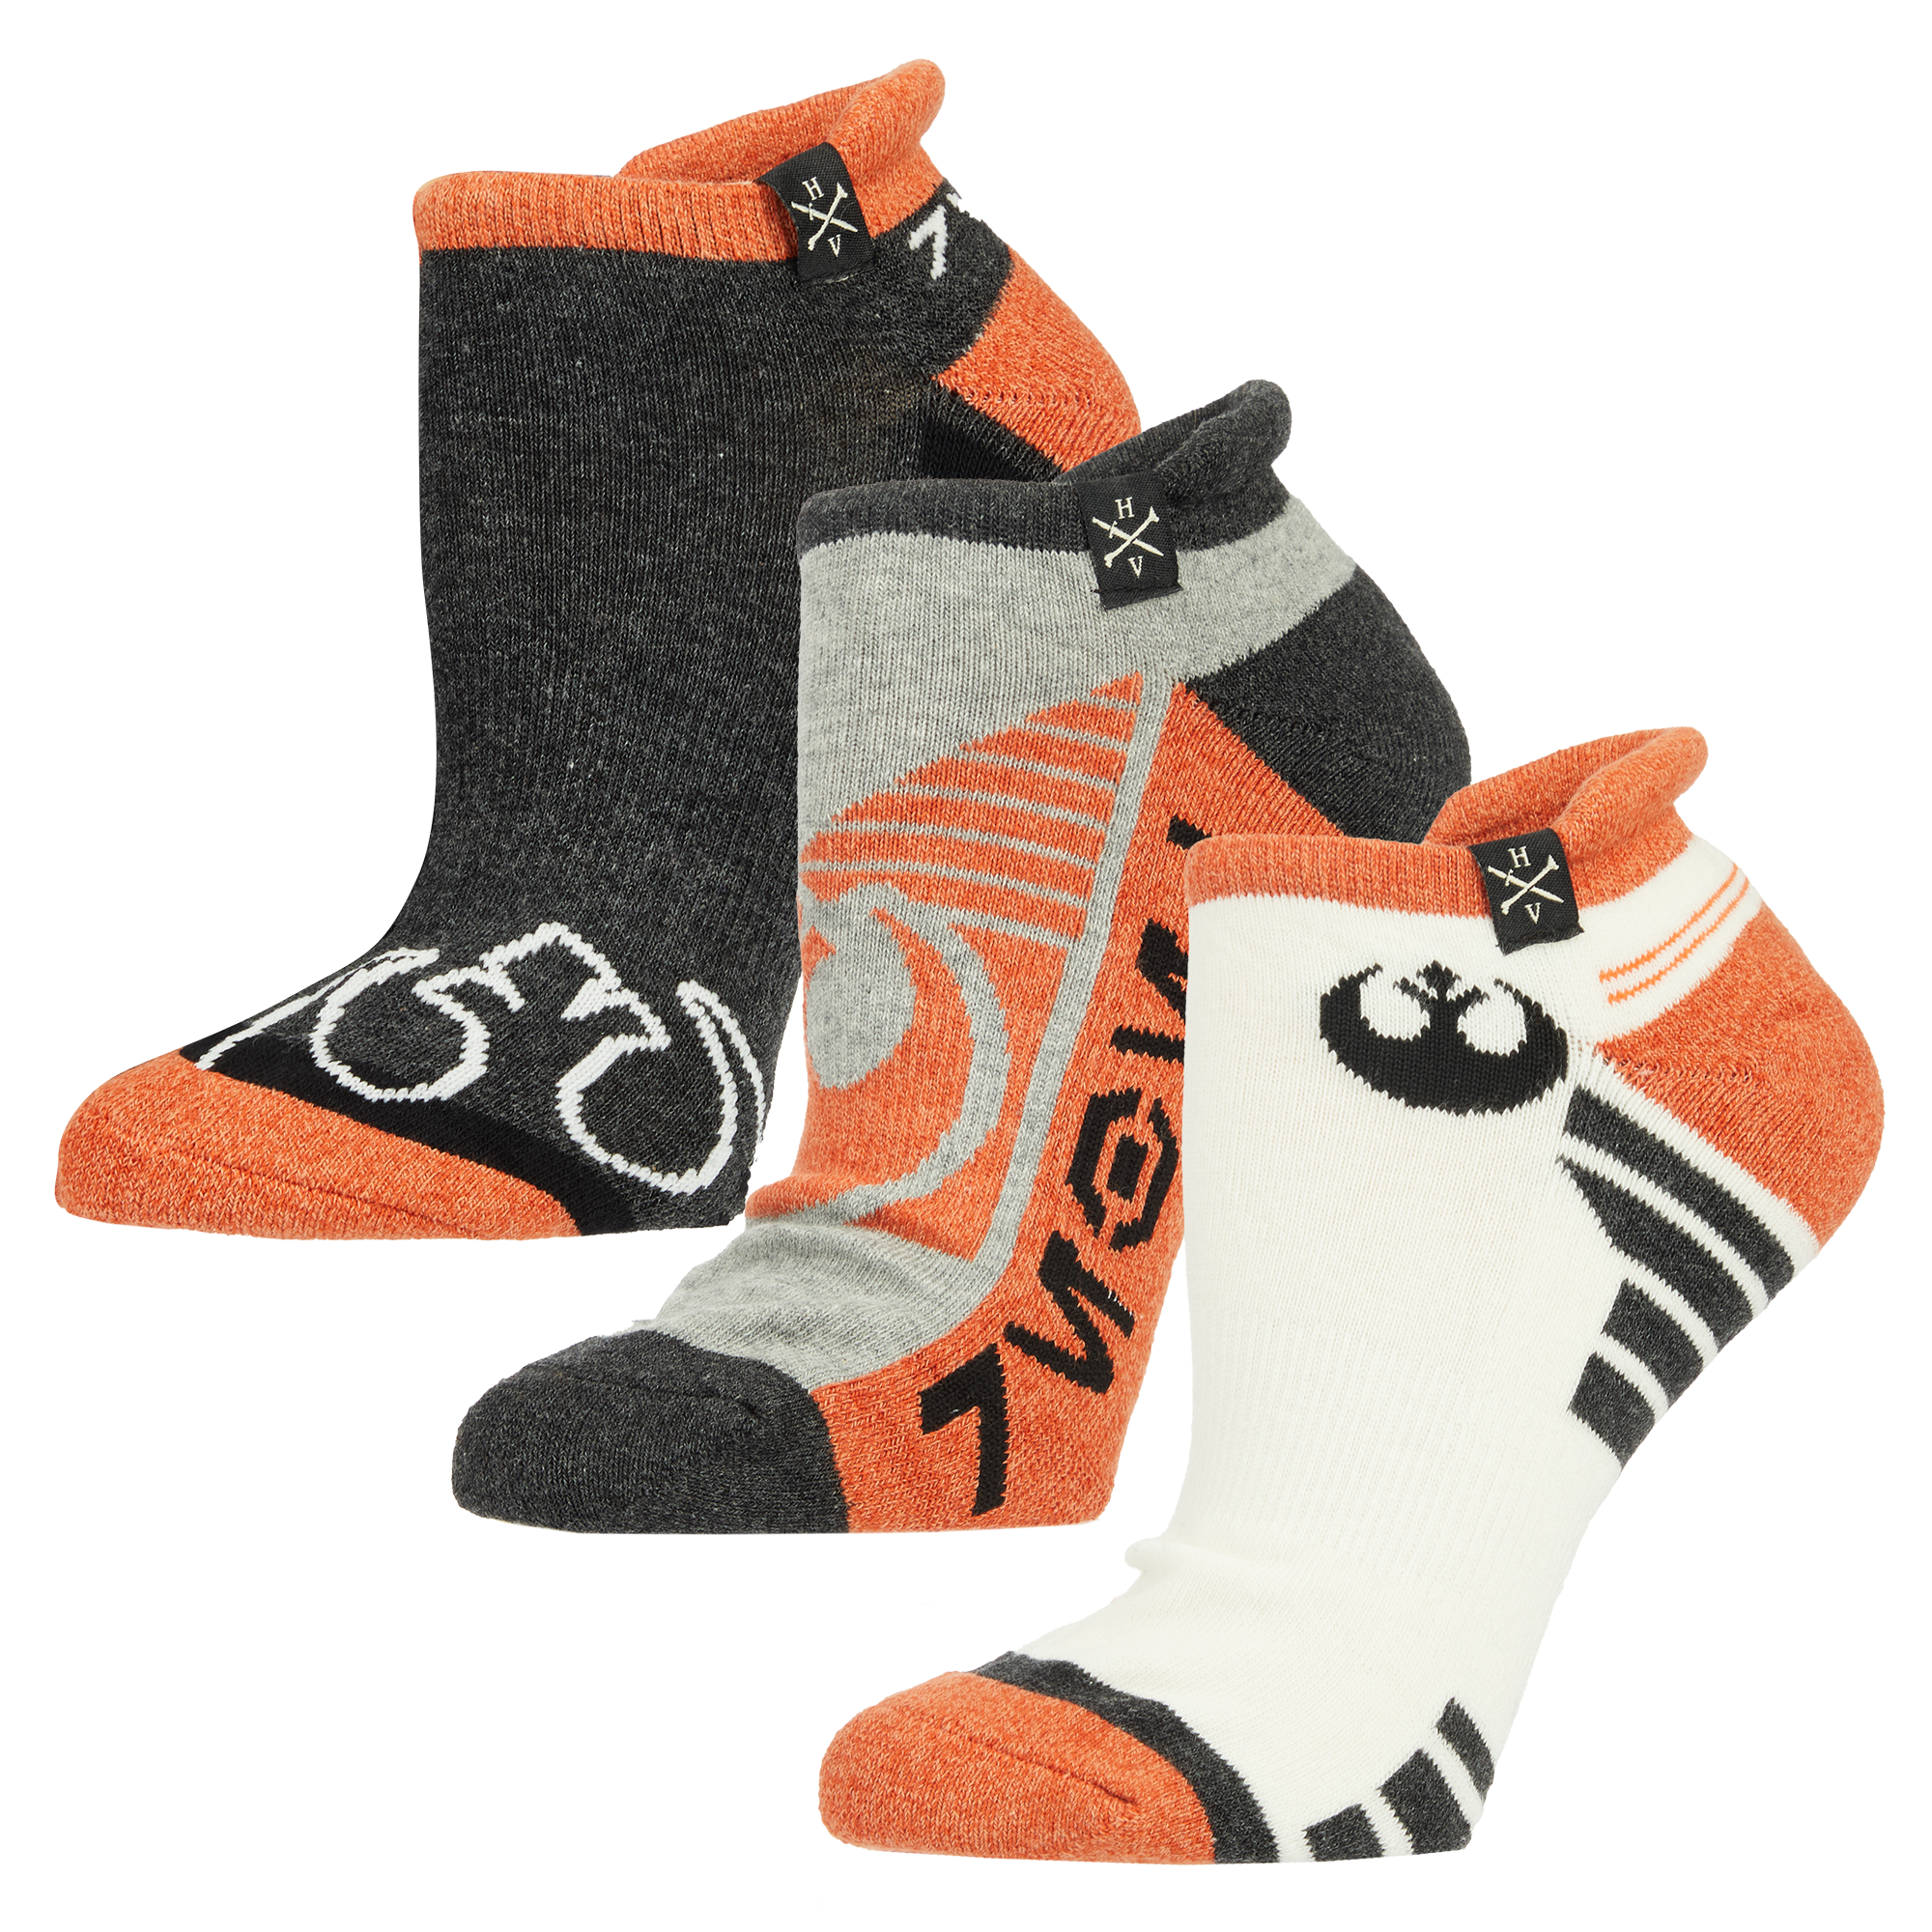 Rebel Ankle Sock Set